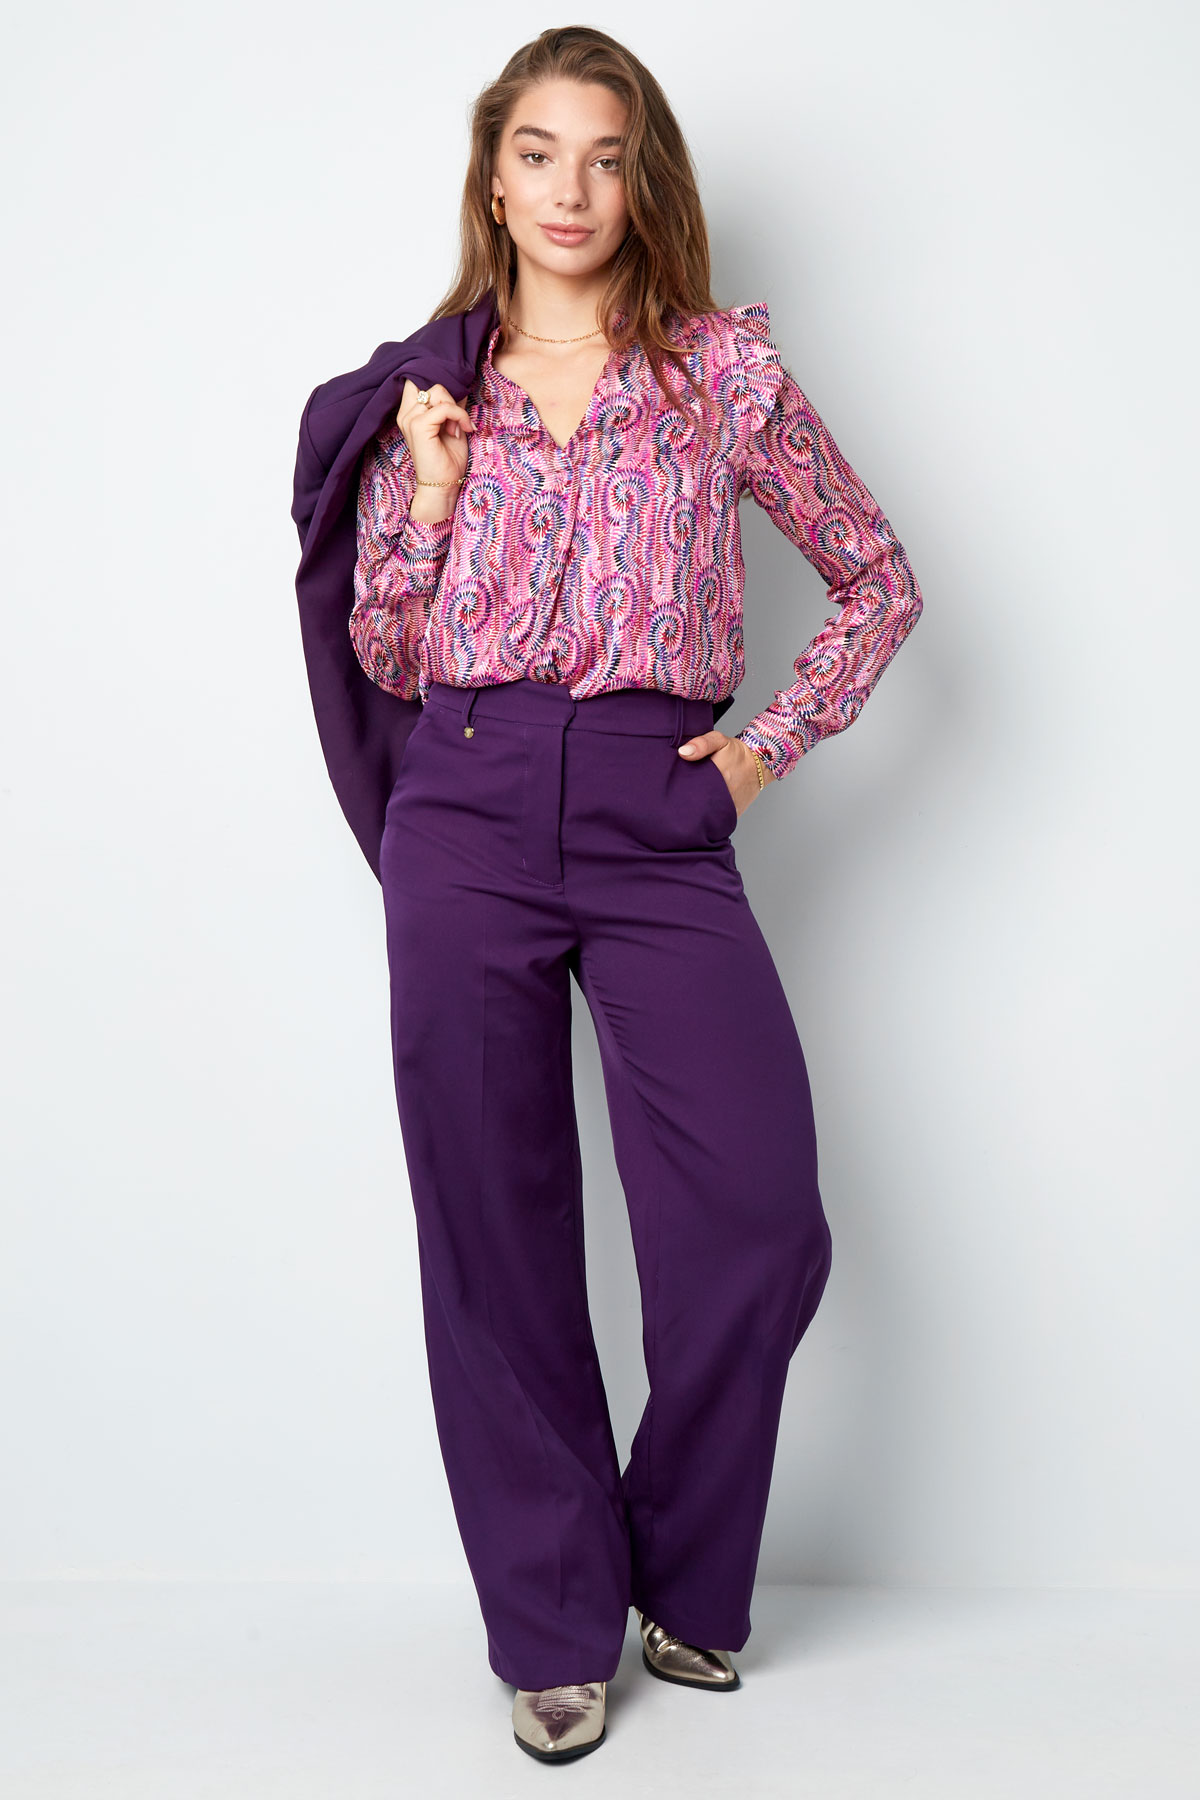 Pantalón plisado - violeta Imagen9